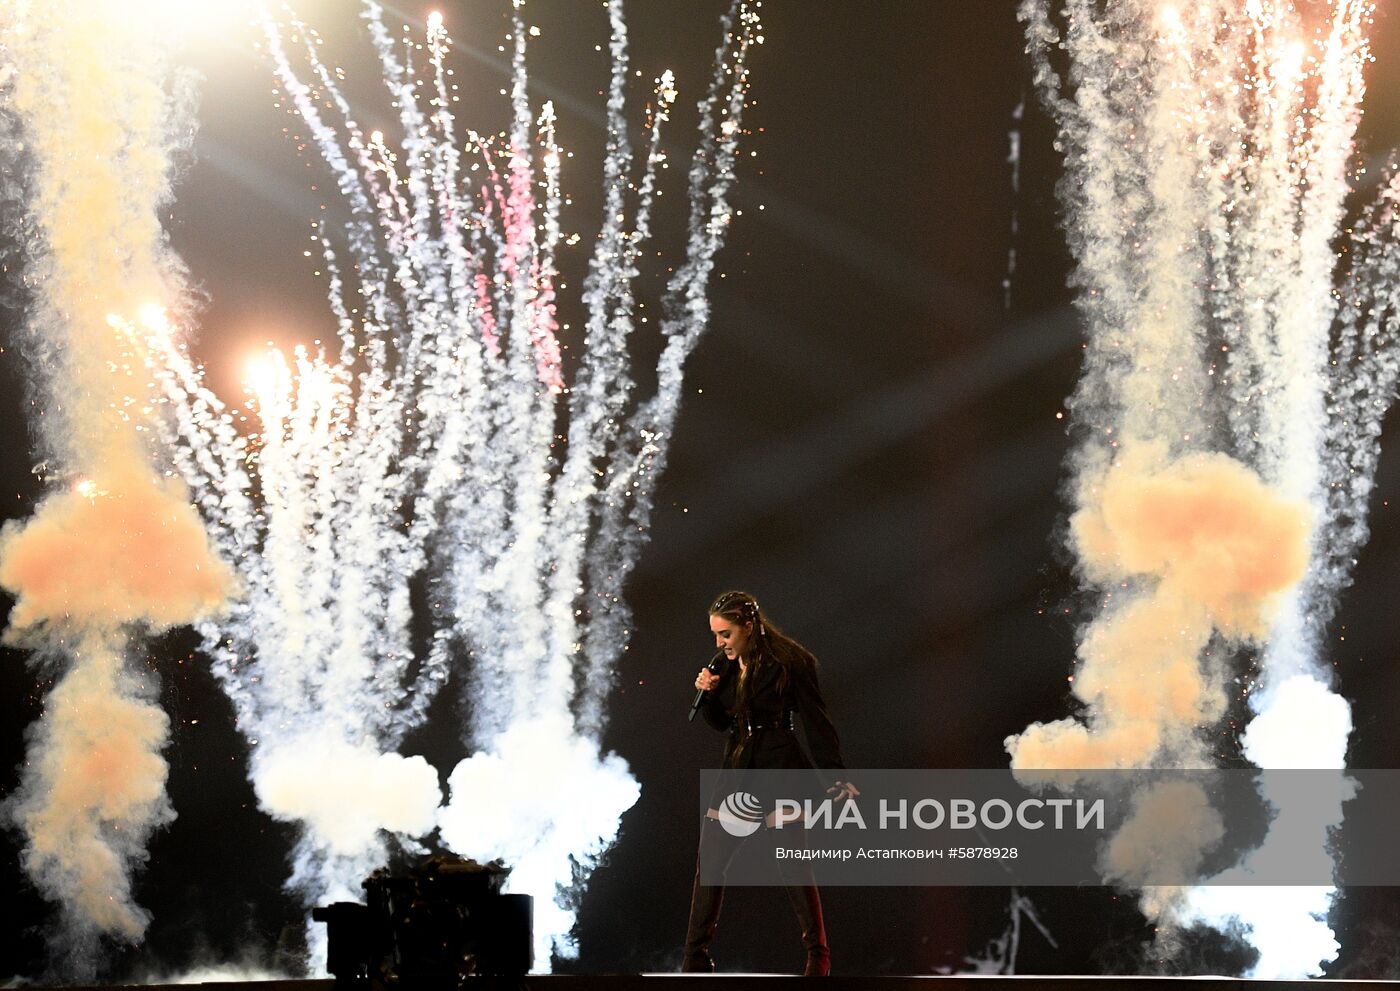 «Евровидение-2019». Репетиция второго полуфинала